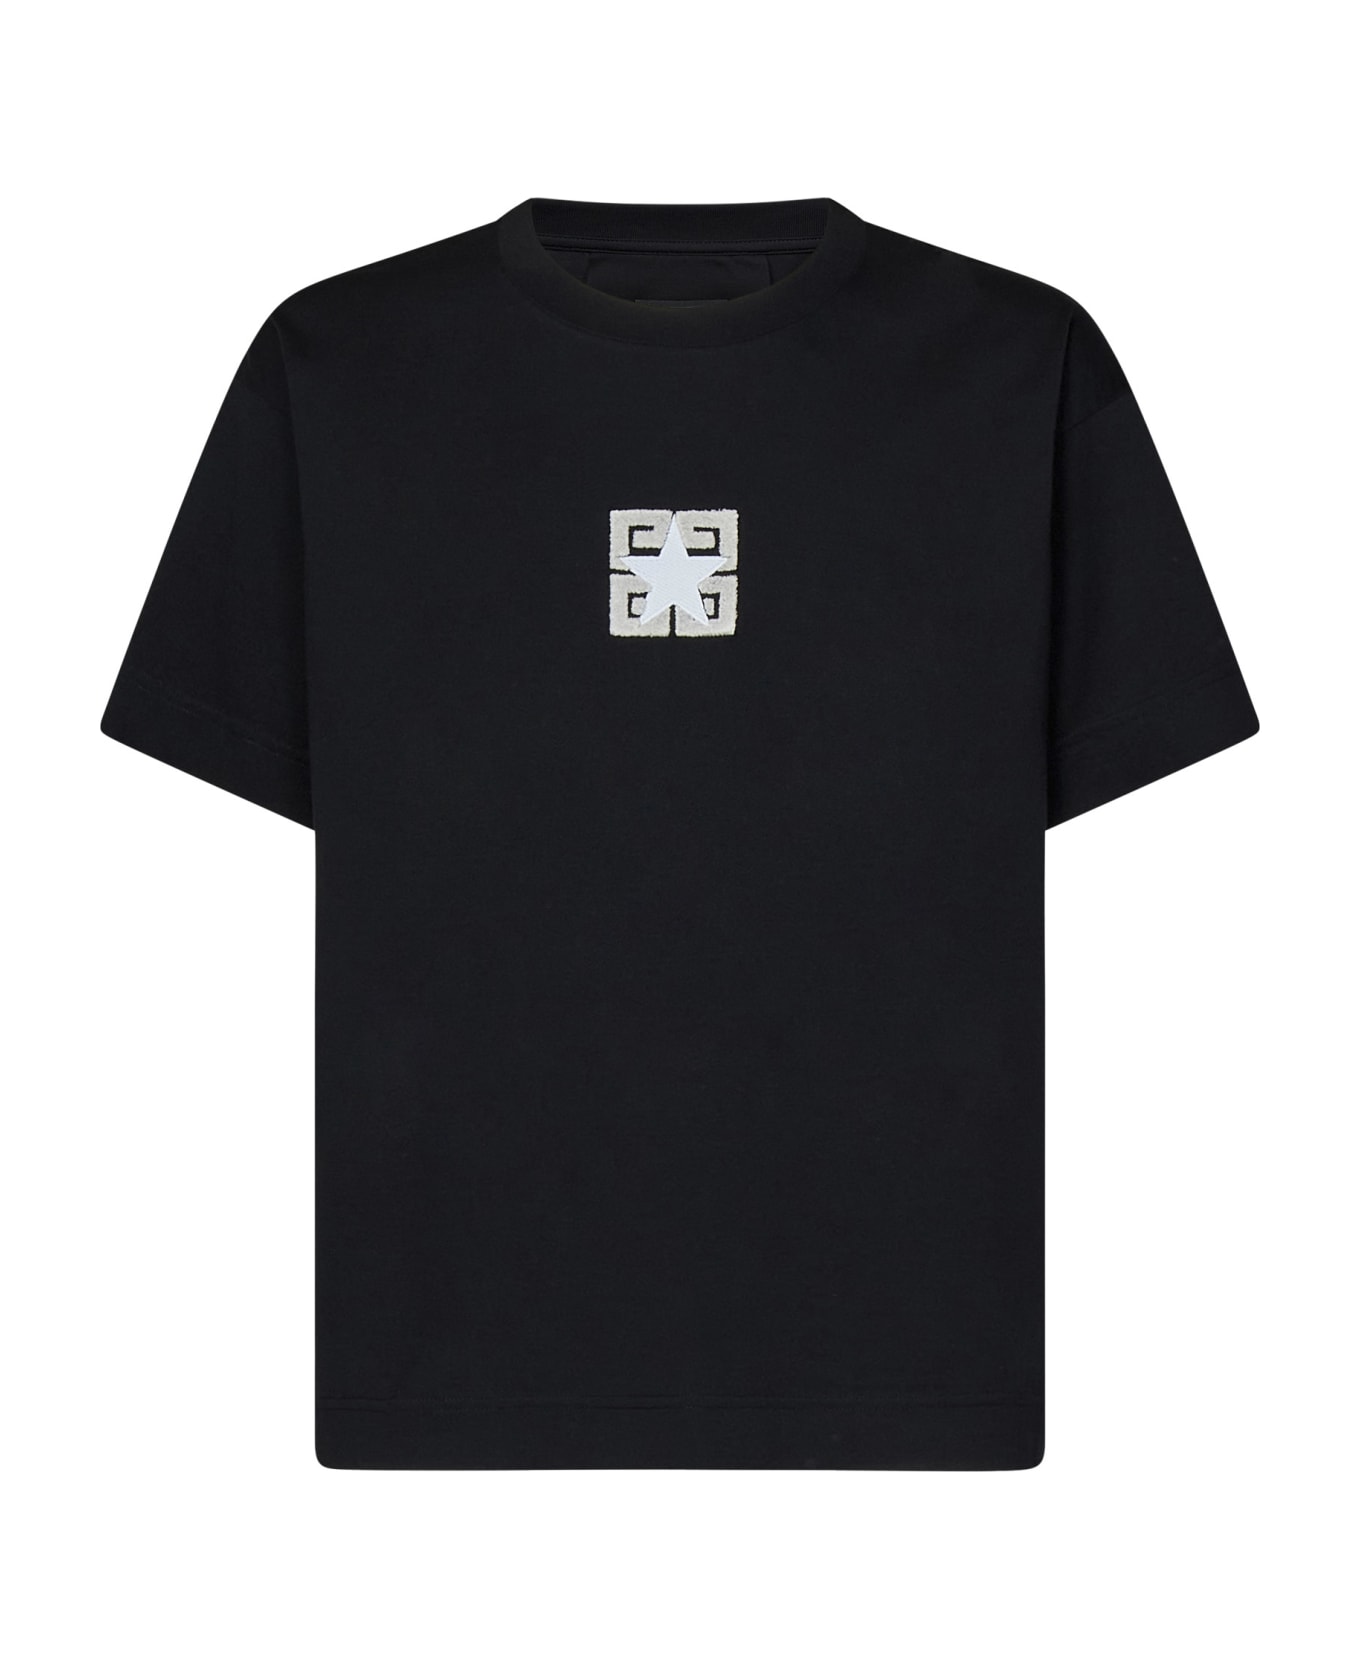 Givenchy 4g Stars T-shirt - Black